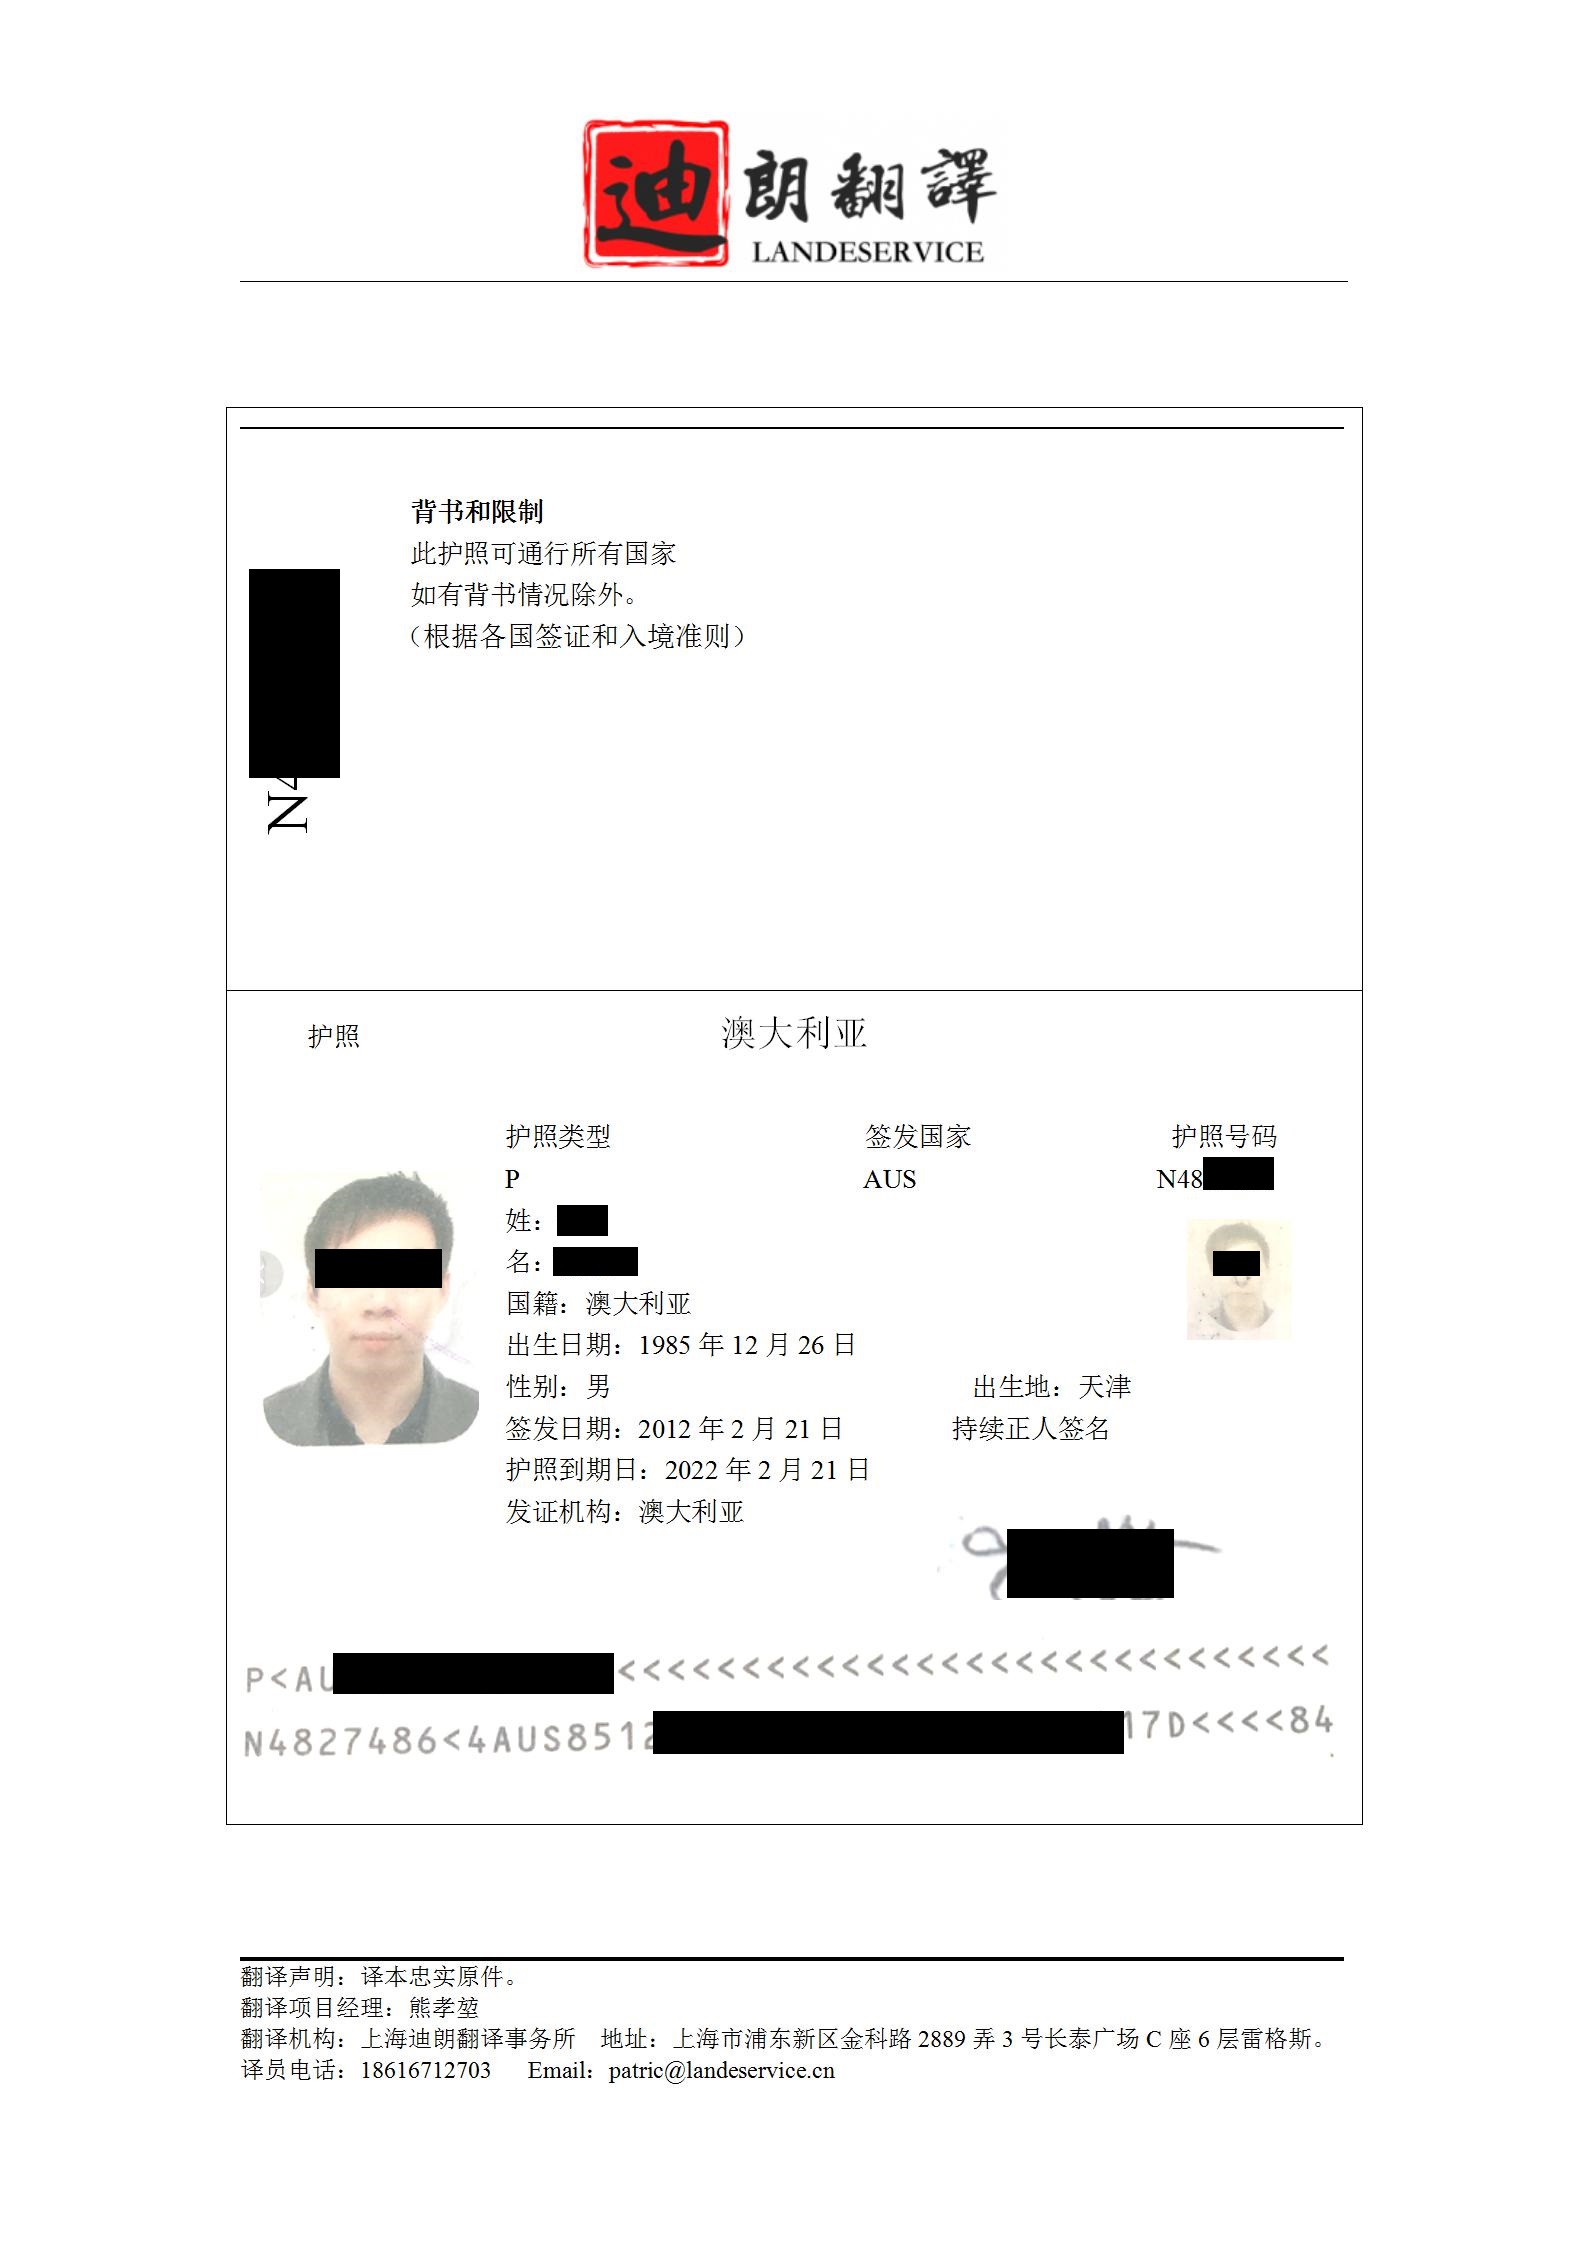 澳大利亚护照ge 01 - 澳大利亚护照翻译认证盖章